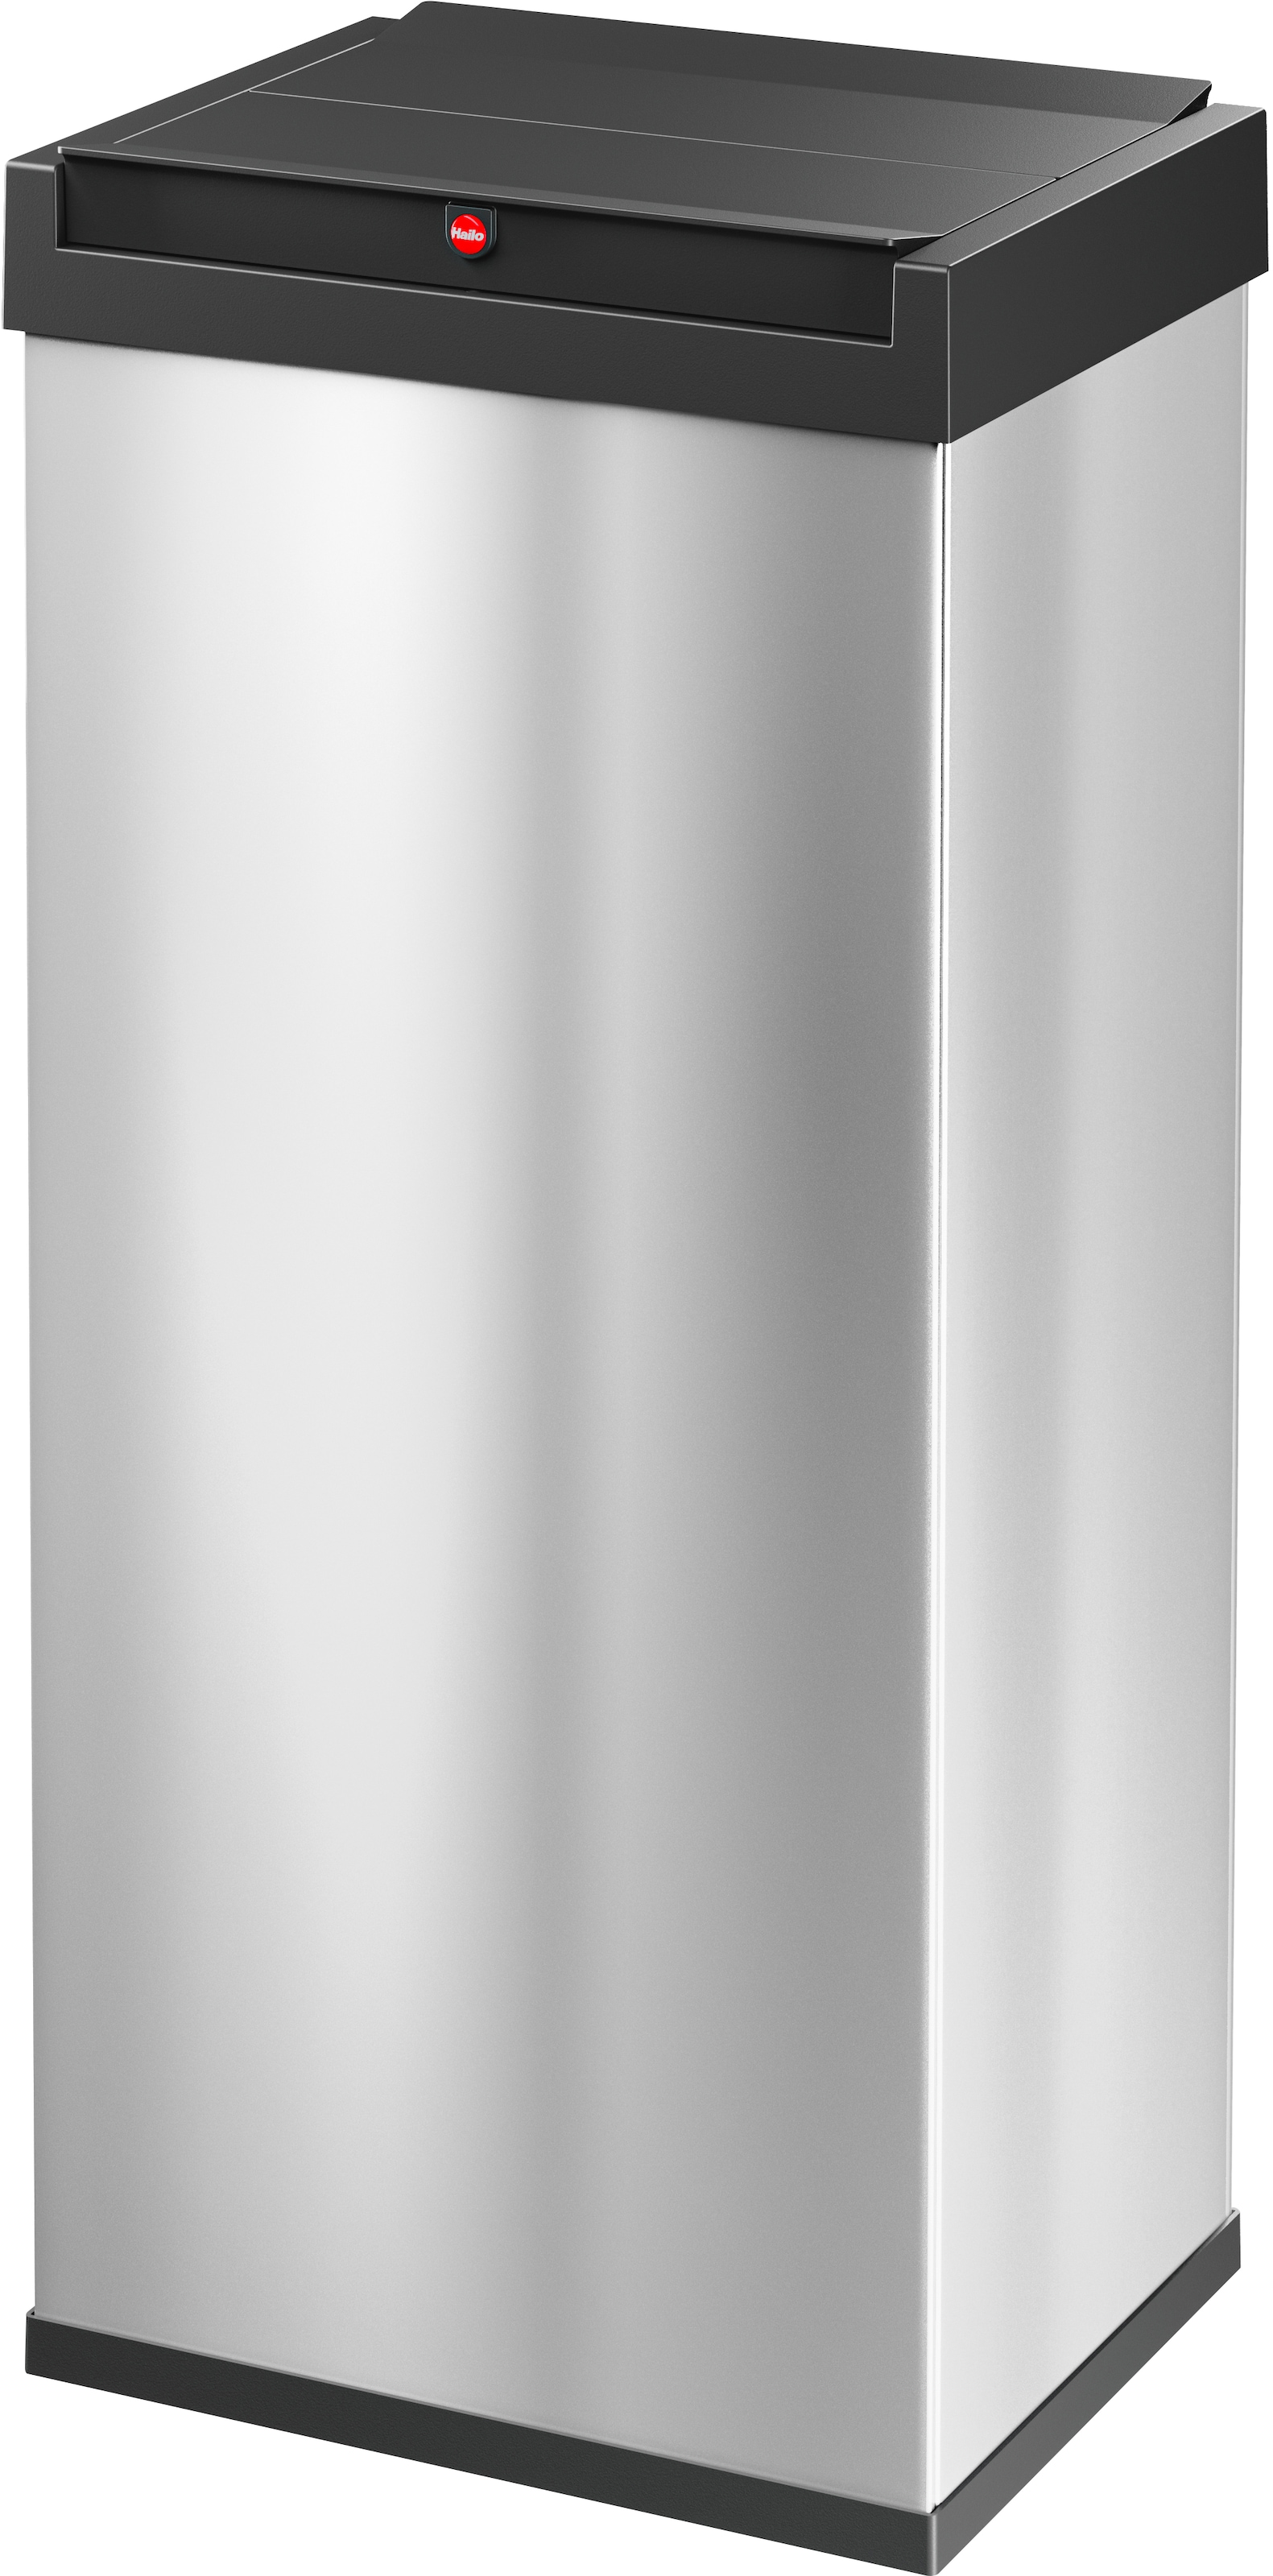 Hailo Mülleimer »Big-Box Swing XL«, 1 Behälter, 52 l, Stahlblech o. Edelstahl, mit selbstschließendem Schwingdeckel